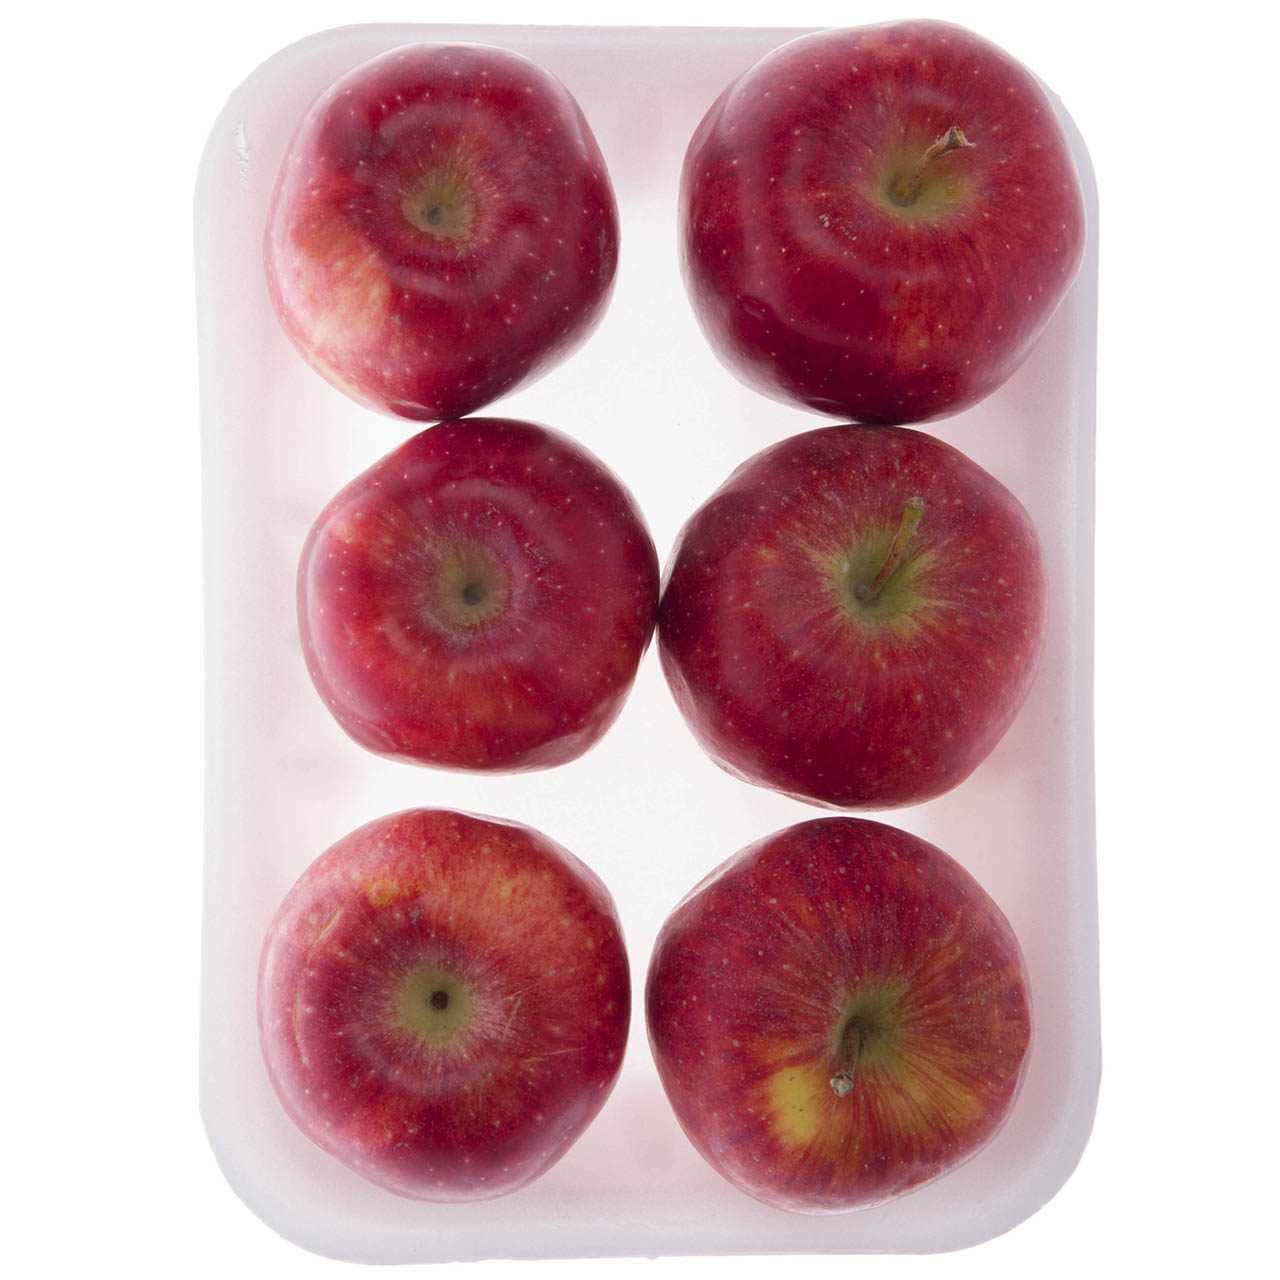 سیب قرمز درجه دو - 1 کیلوگرم